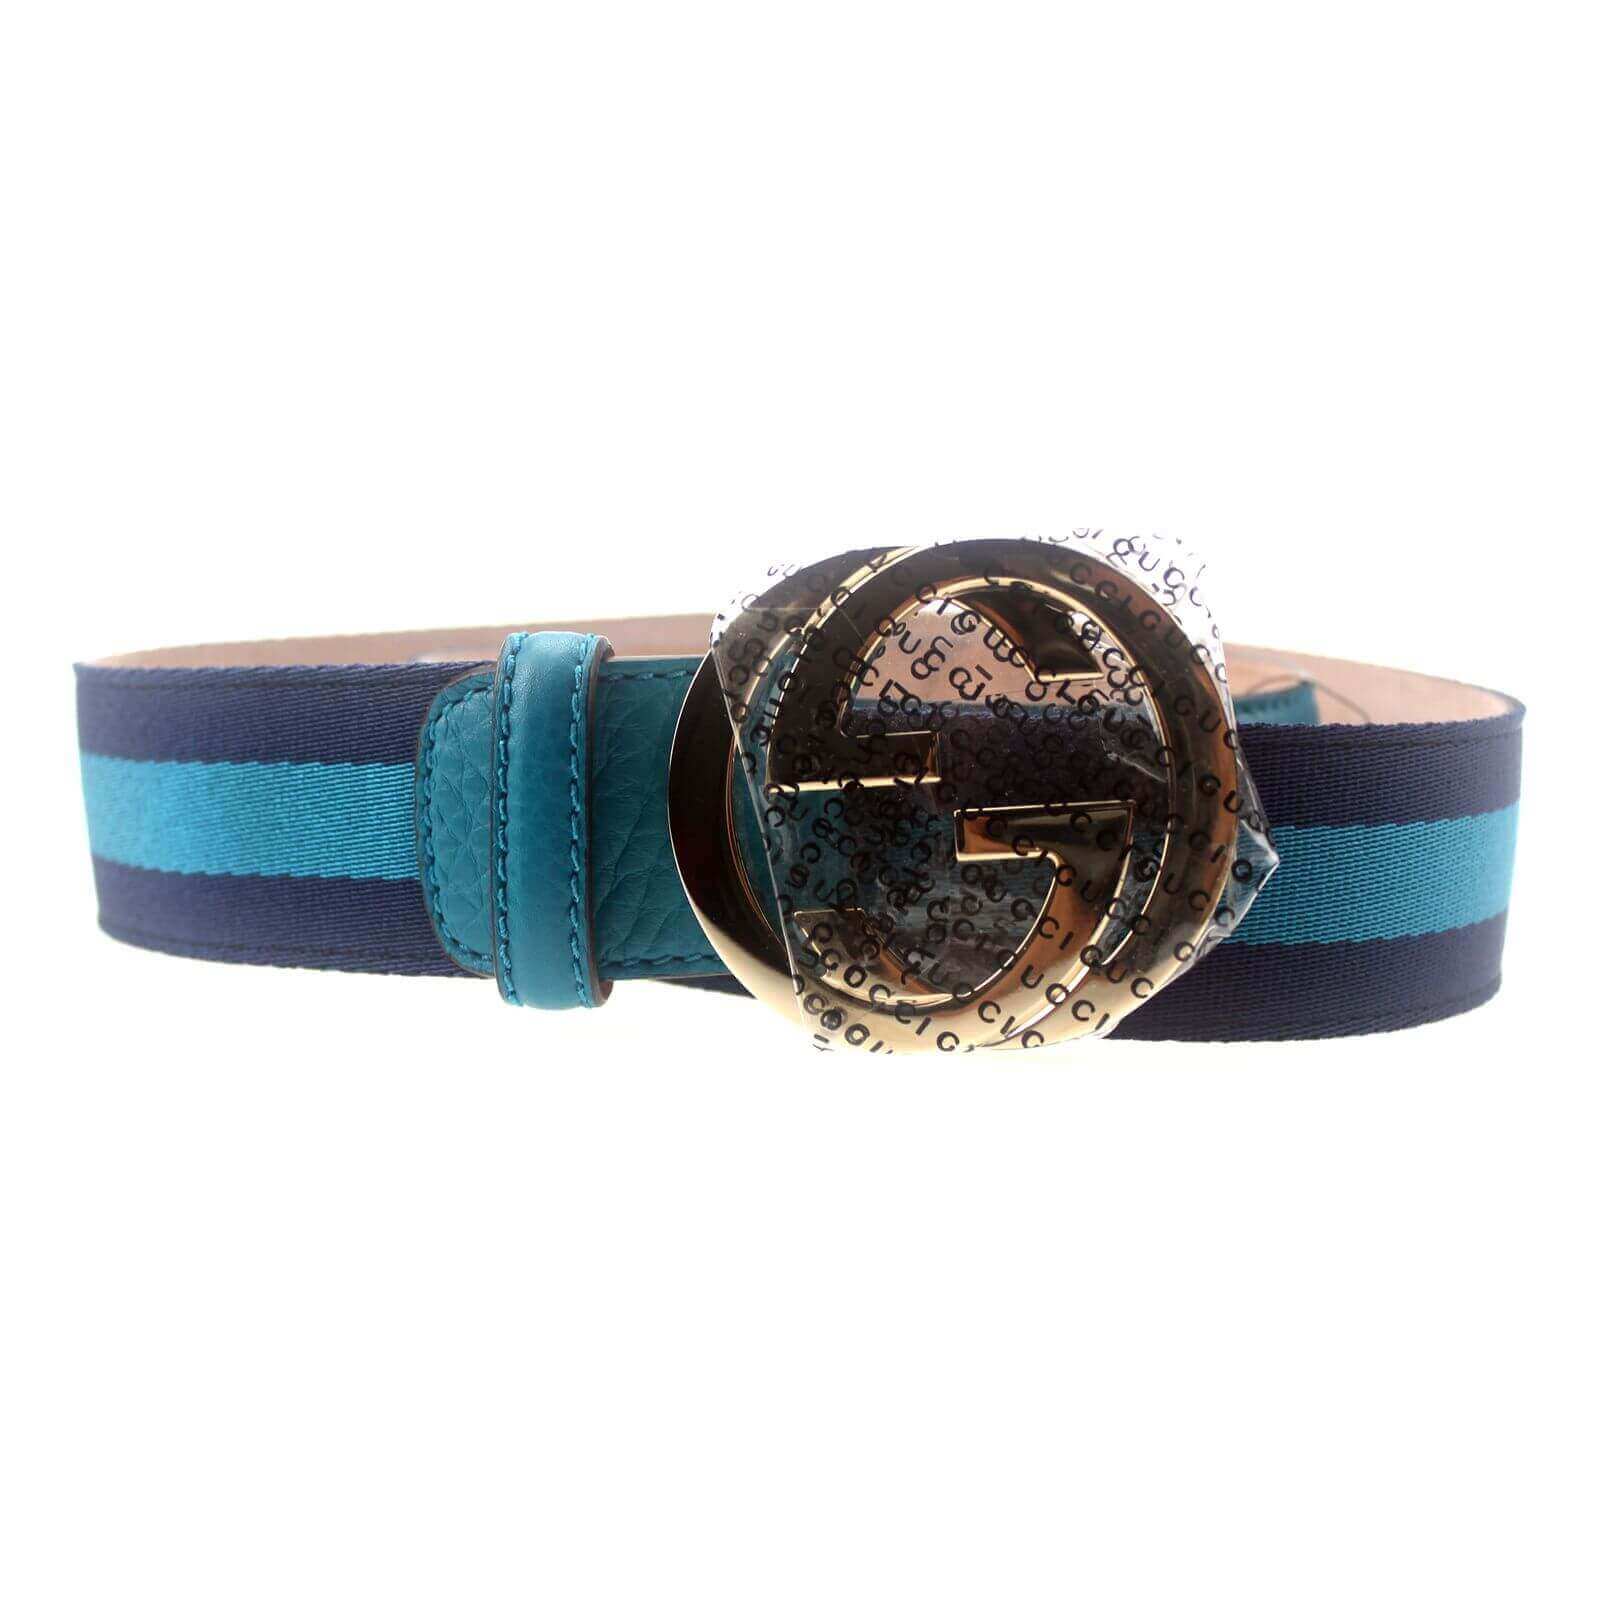 gucci belt navy blue